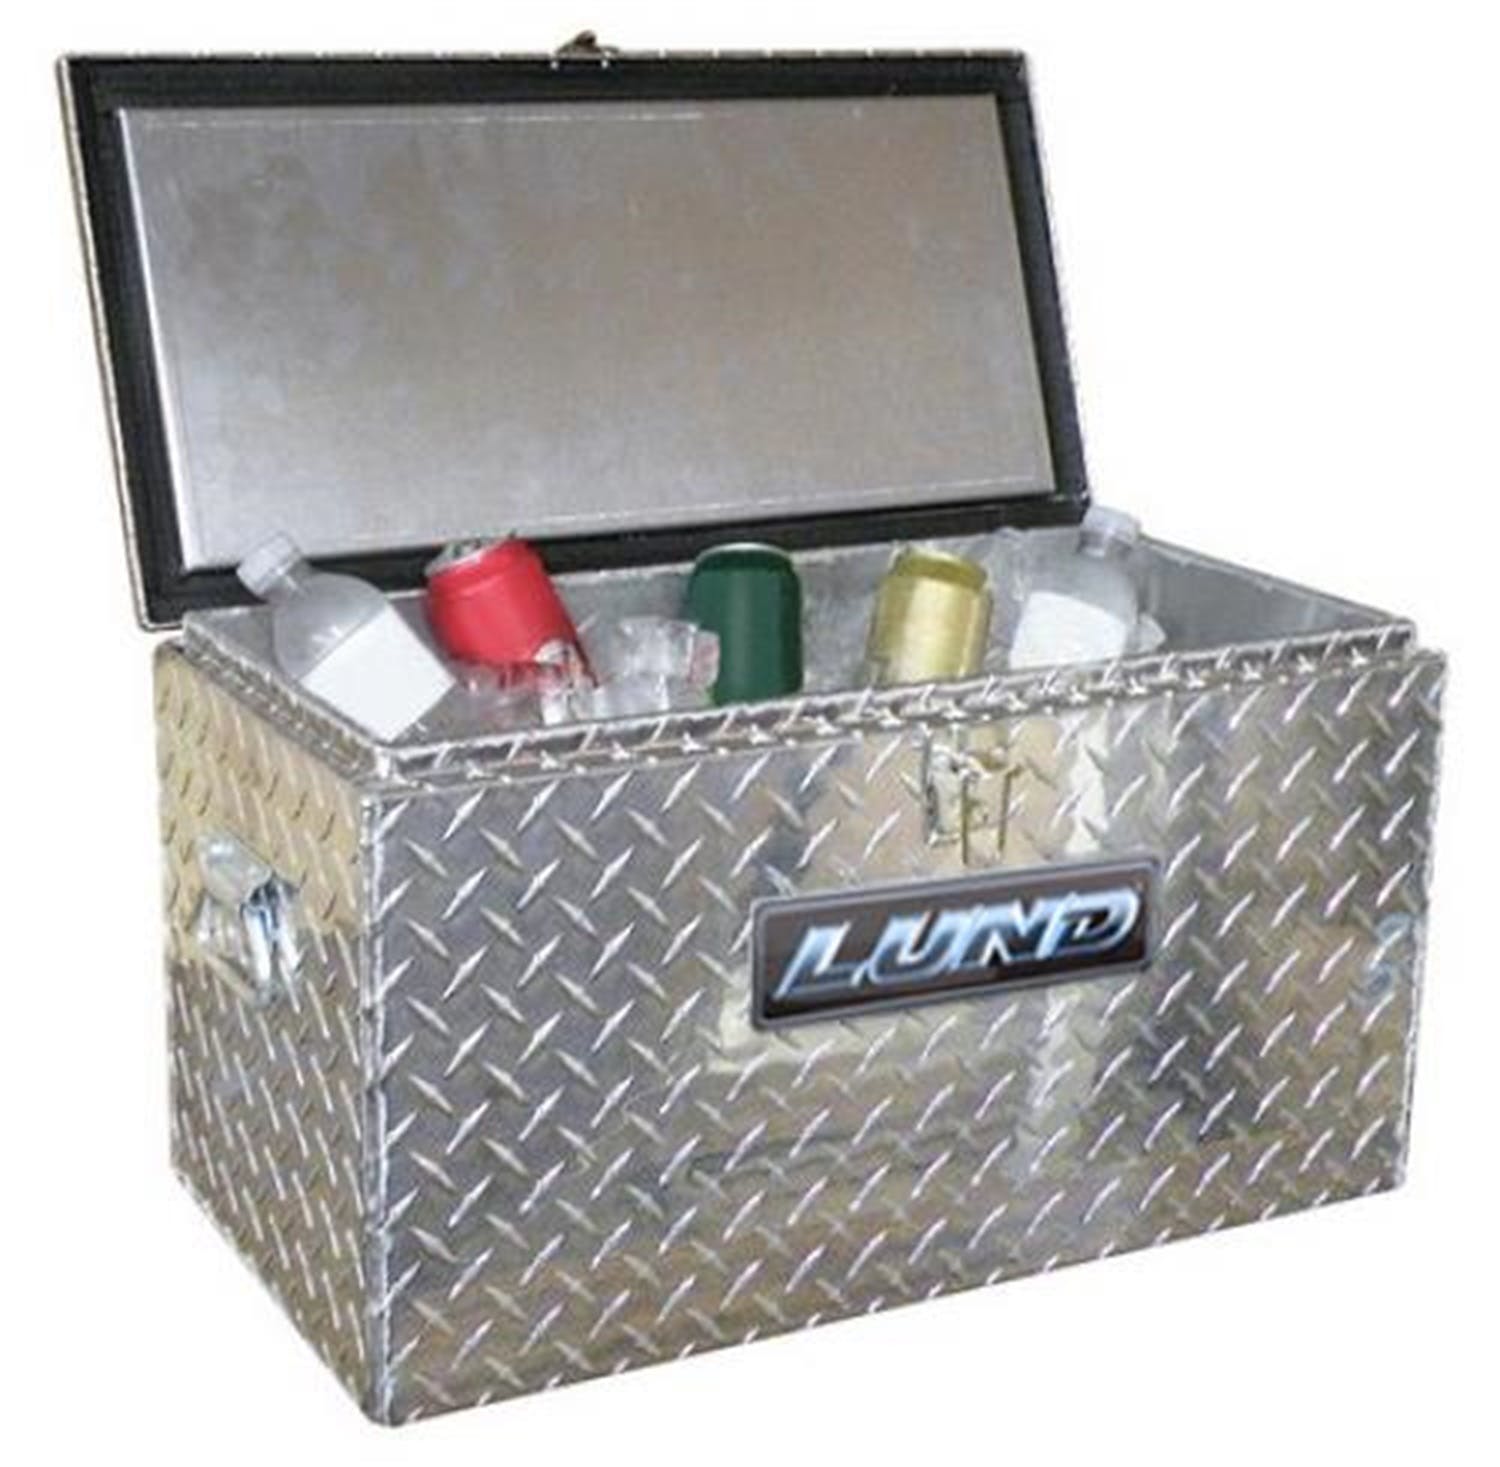 LUND 4400 Aluminum Specialty Box ALUMINUM SPECIALTY BOXES